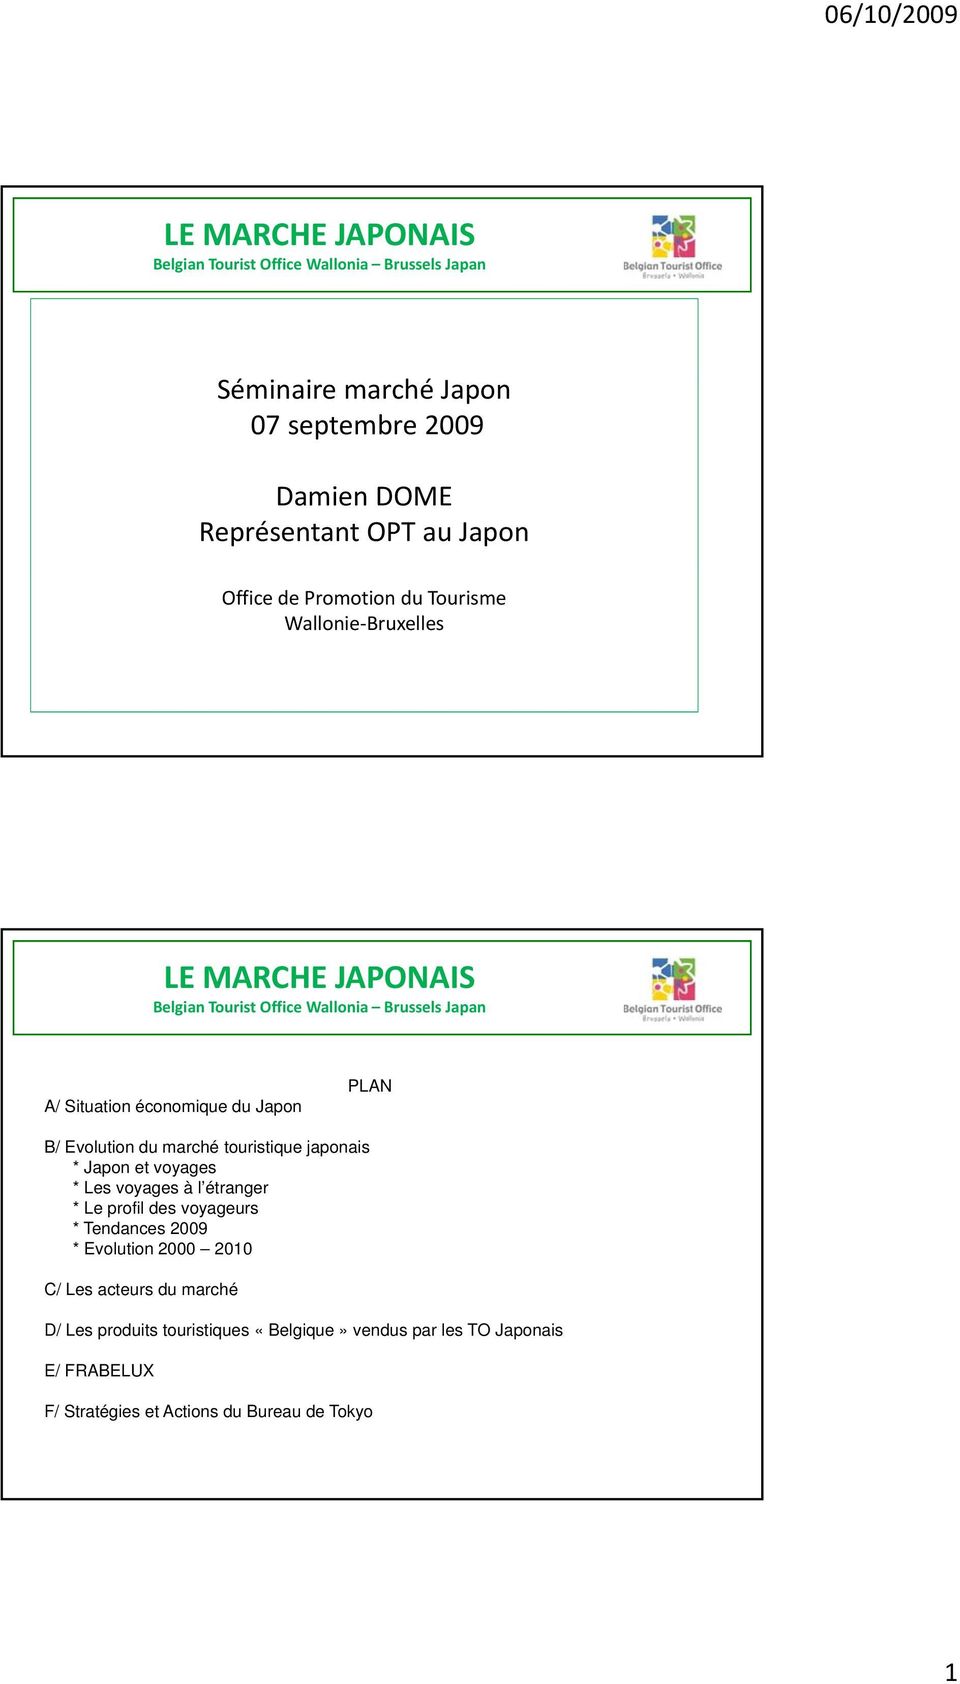 PLAN B/ Evolution du marché touristique japonais * Japon et voyages * Les voyages à l étranger * Le profil des voyageurs * Tendances 2009 * Evolution